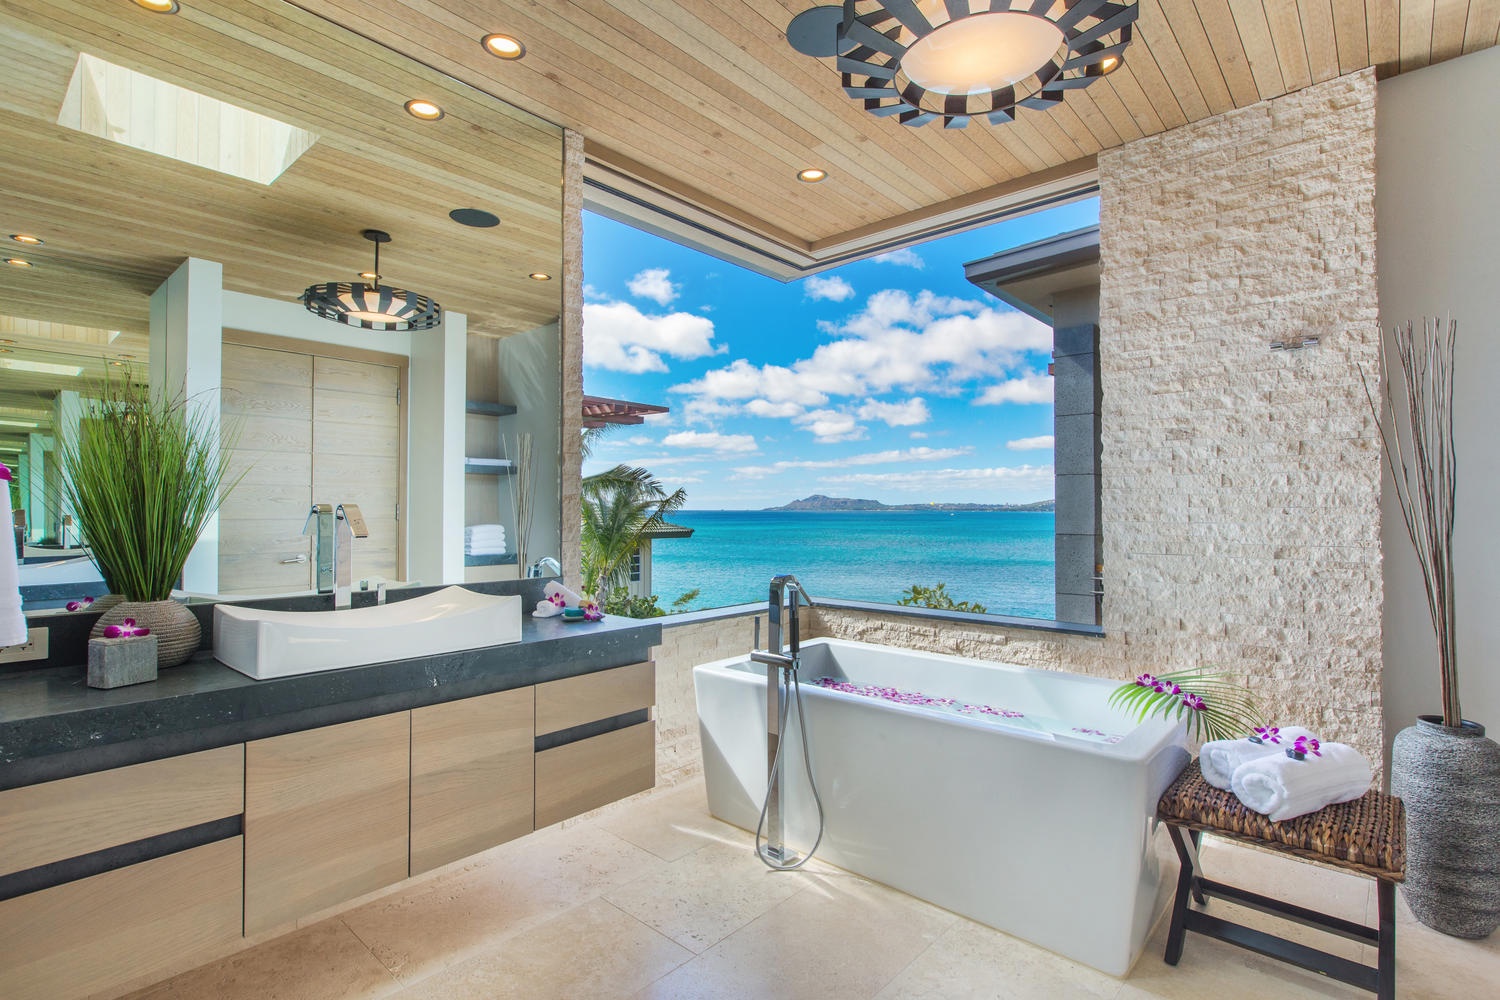 Honolulu Vacation Rentals, Ocean House 4 Bedroom - Primary bathroom views